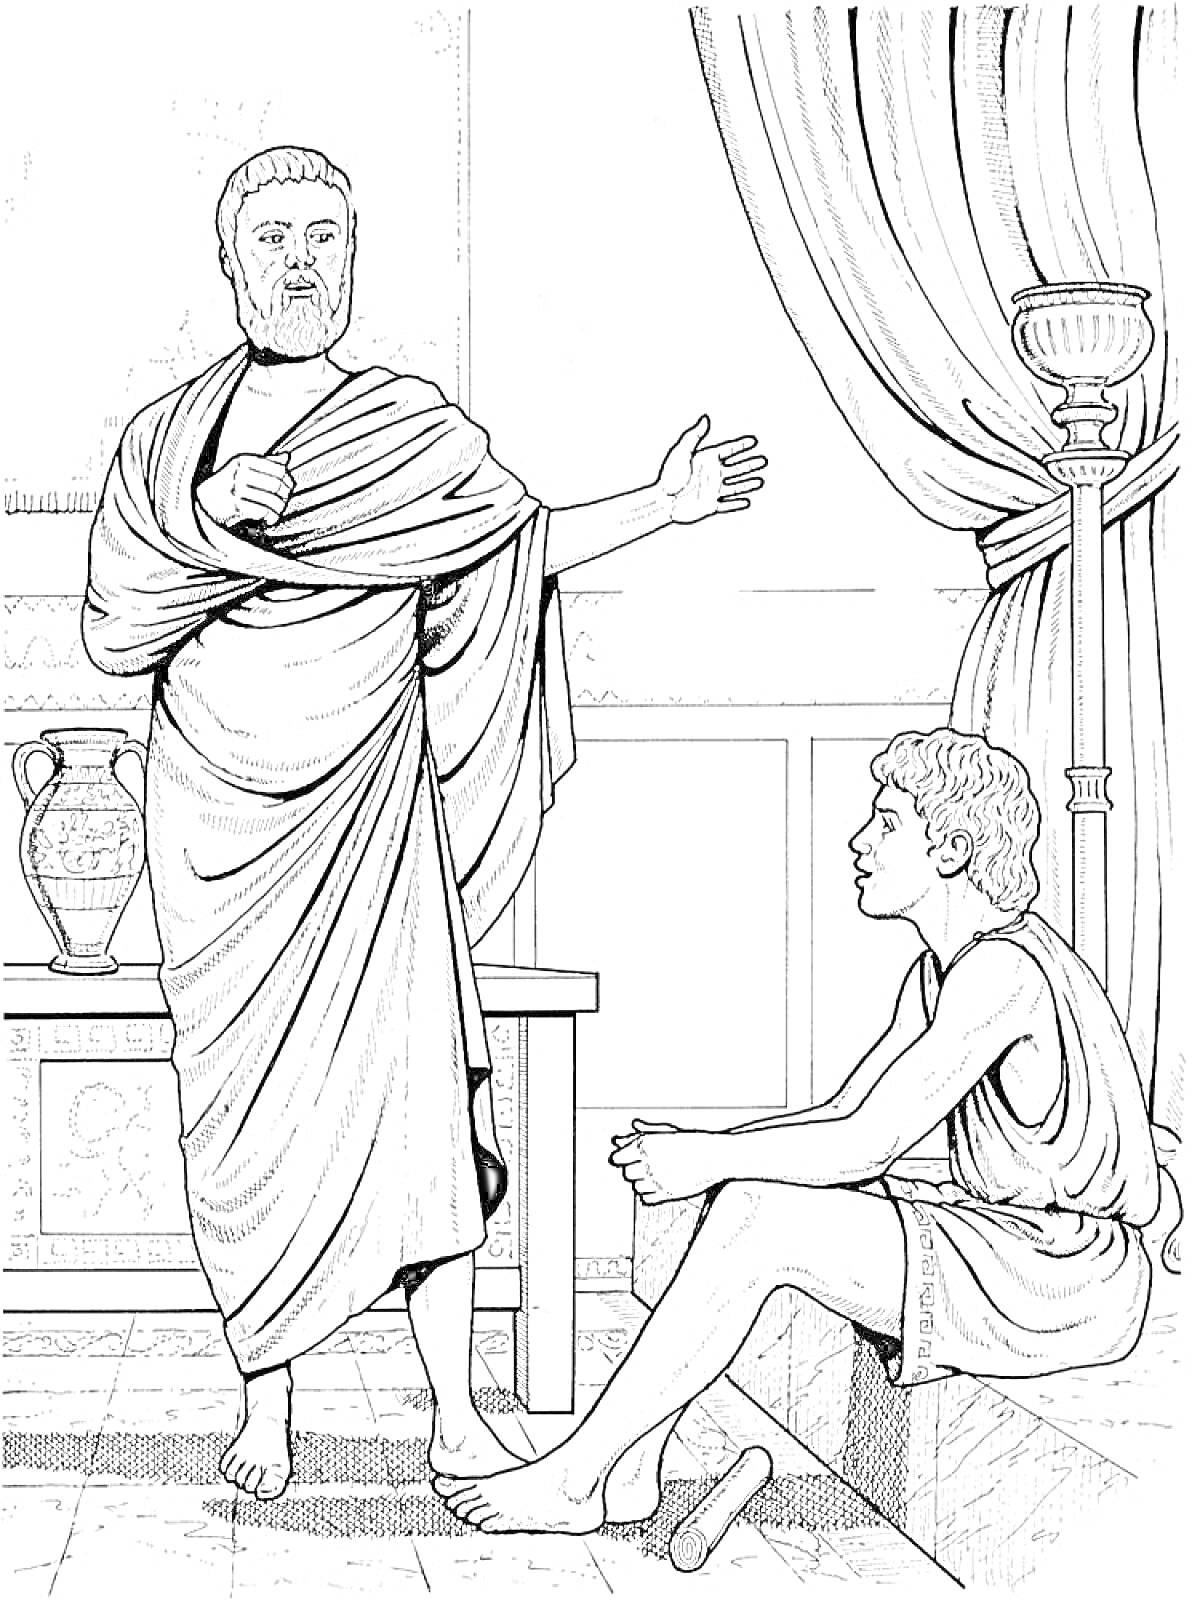 Раскраска Два человека в древнегреческих одеждах, один стоит и жестикулирует, другой сидит, на заднем плане амфора, колонна и занавеска